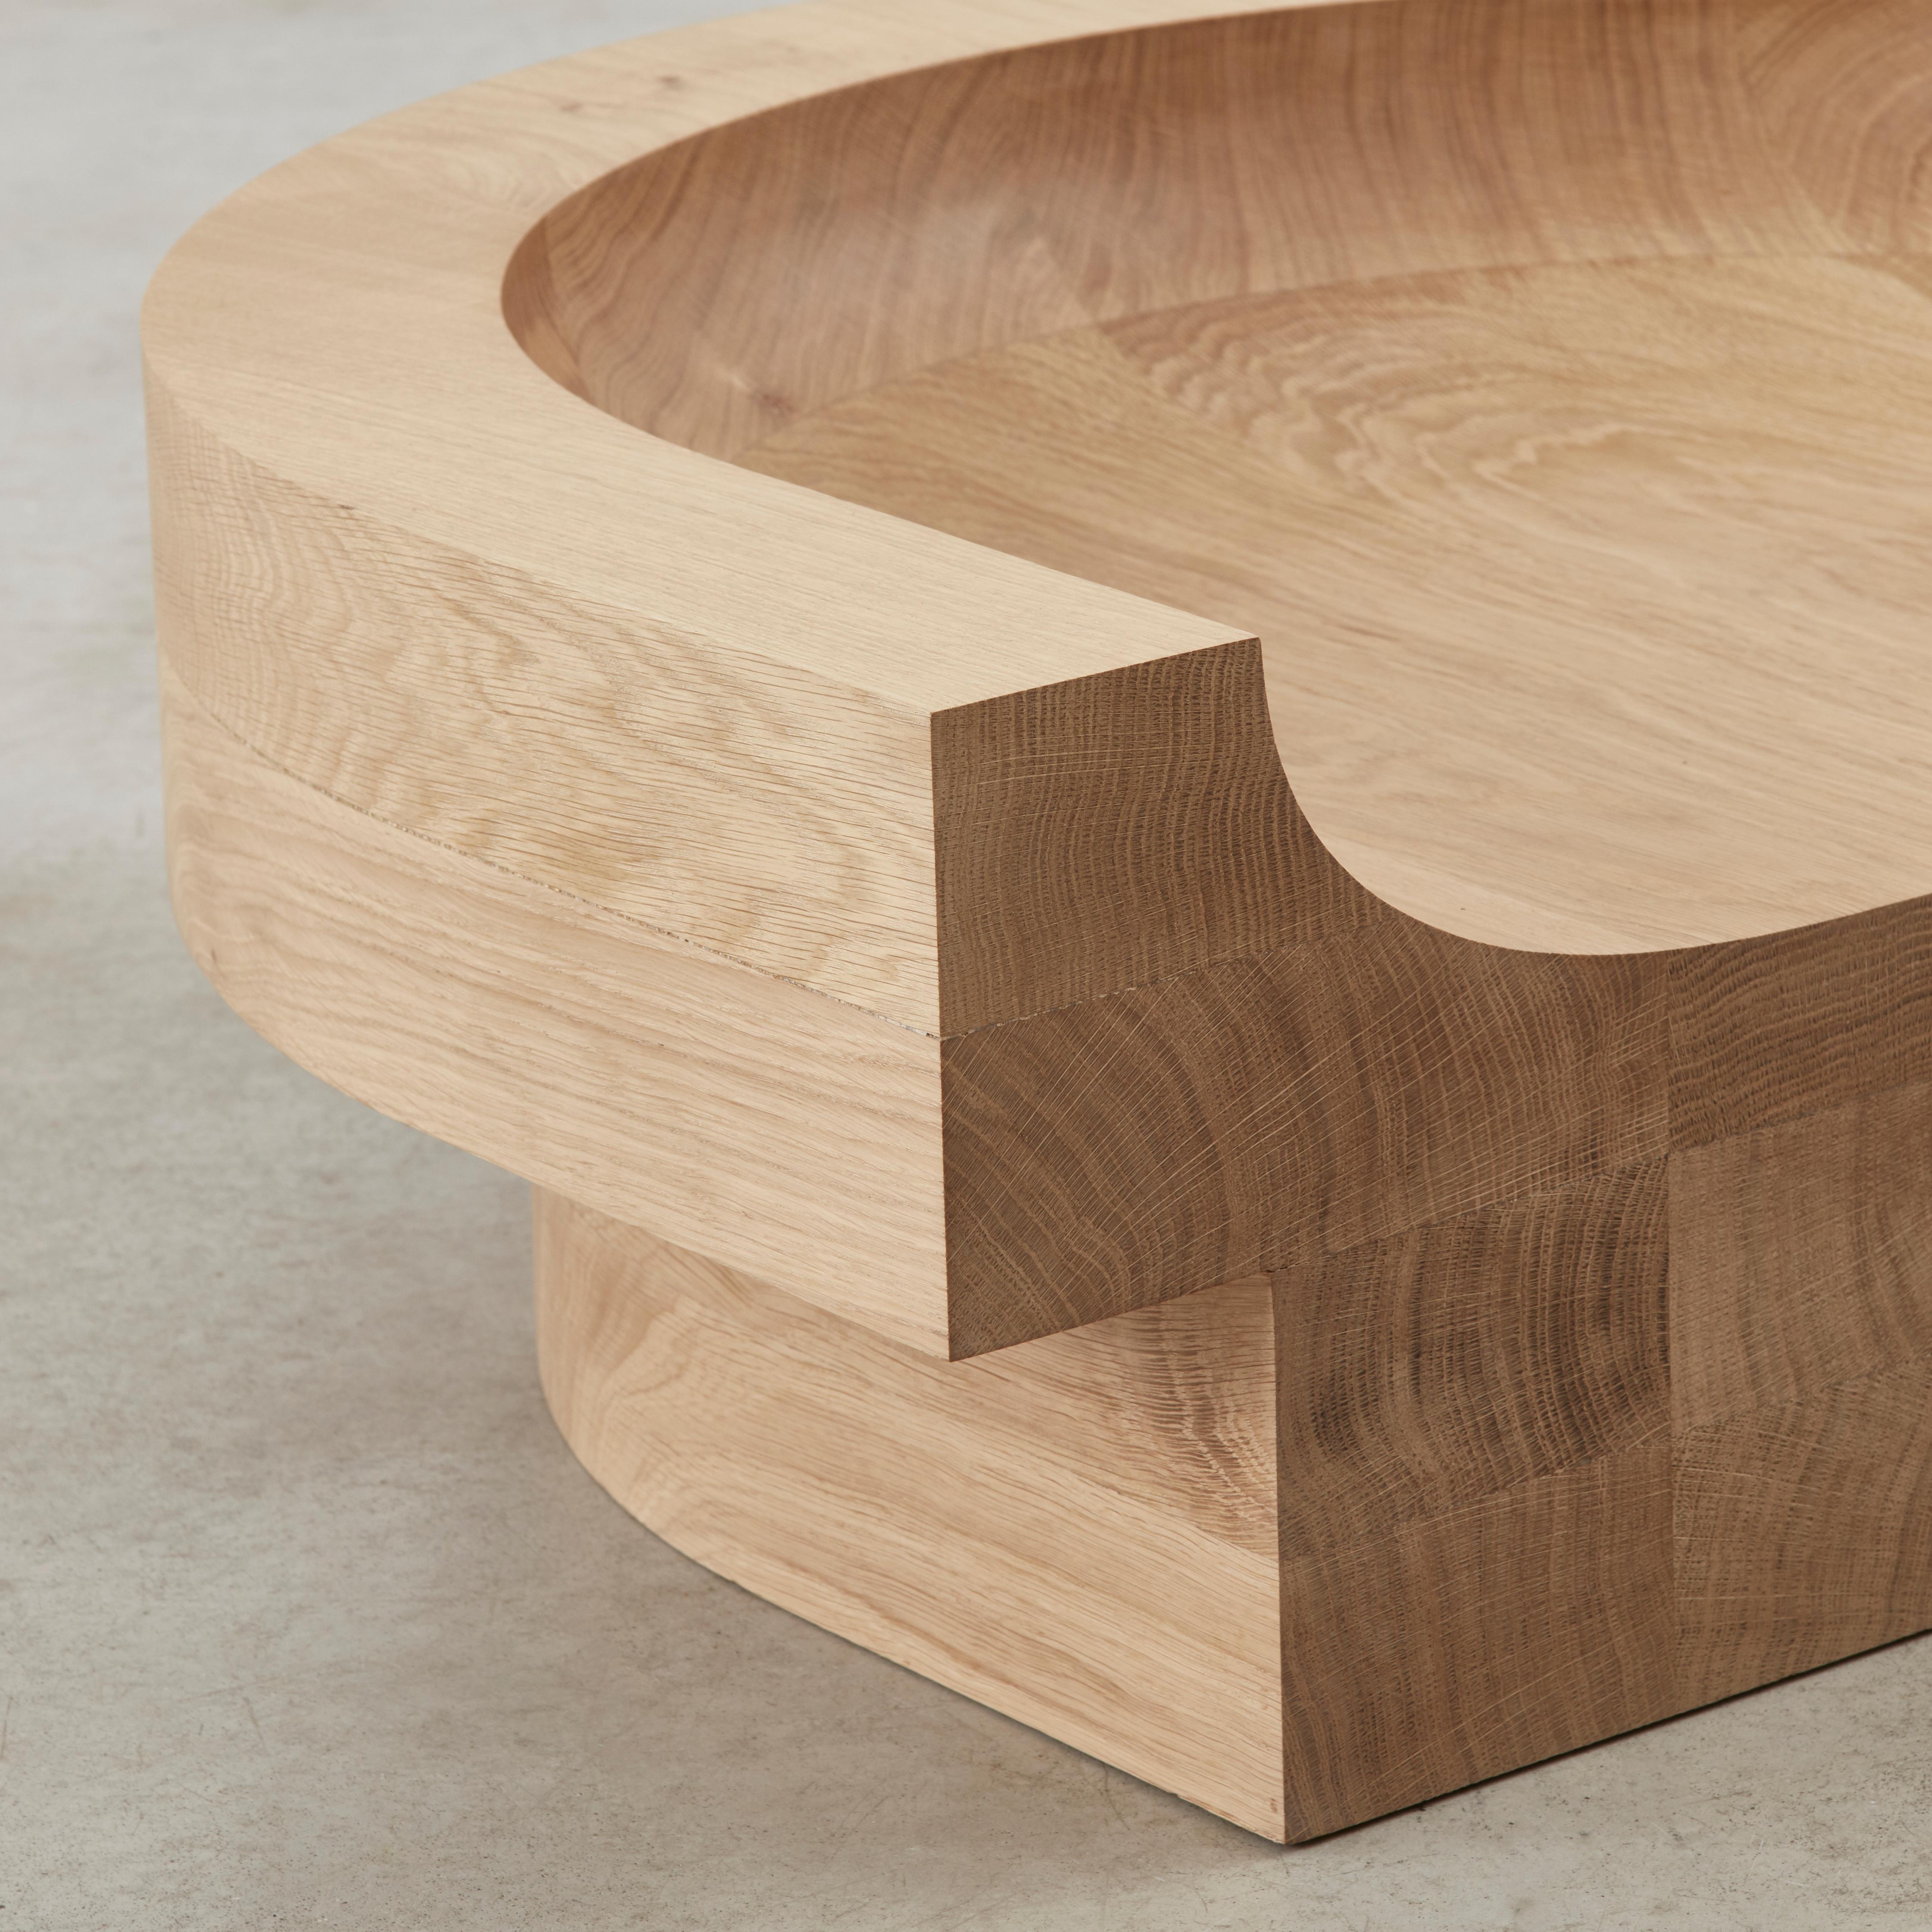 Benni Allan 'Low Seat' in oak by EBBA, UK, 2022 For Sale 1